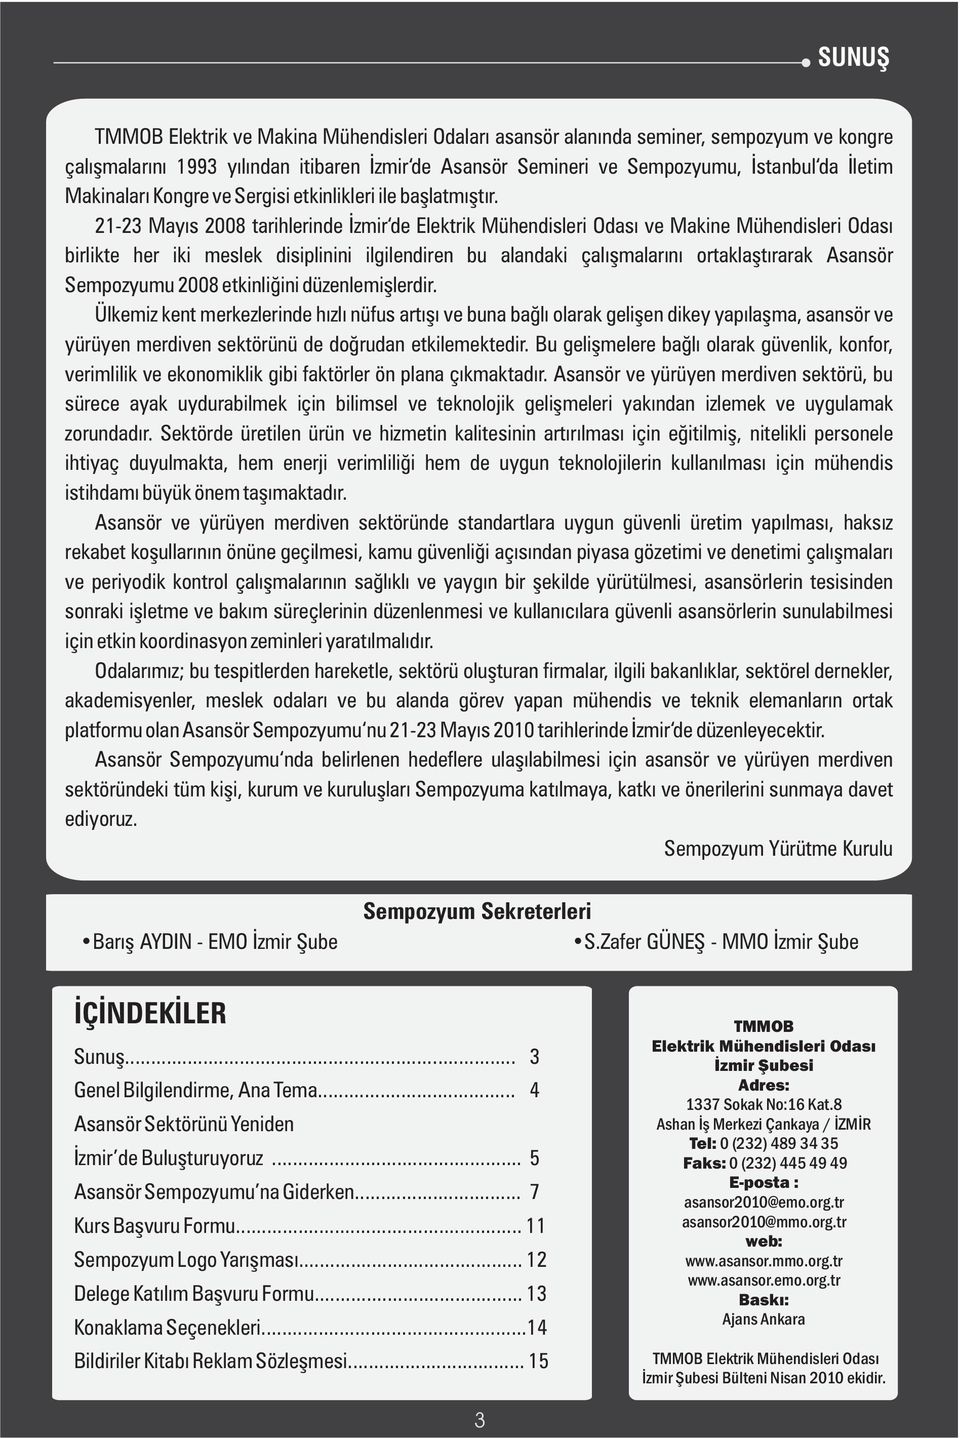 21-23 Mayıs 2008 tarihlerinde İzmir de Elektrik Mühendisleri Odası ve Makine Mühendisleri Odası birlikte her iki meslek disiplinini ilgilendiren bu alandaki çalışmalarını ortaklaştırarak Asansör